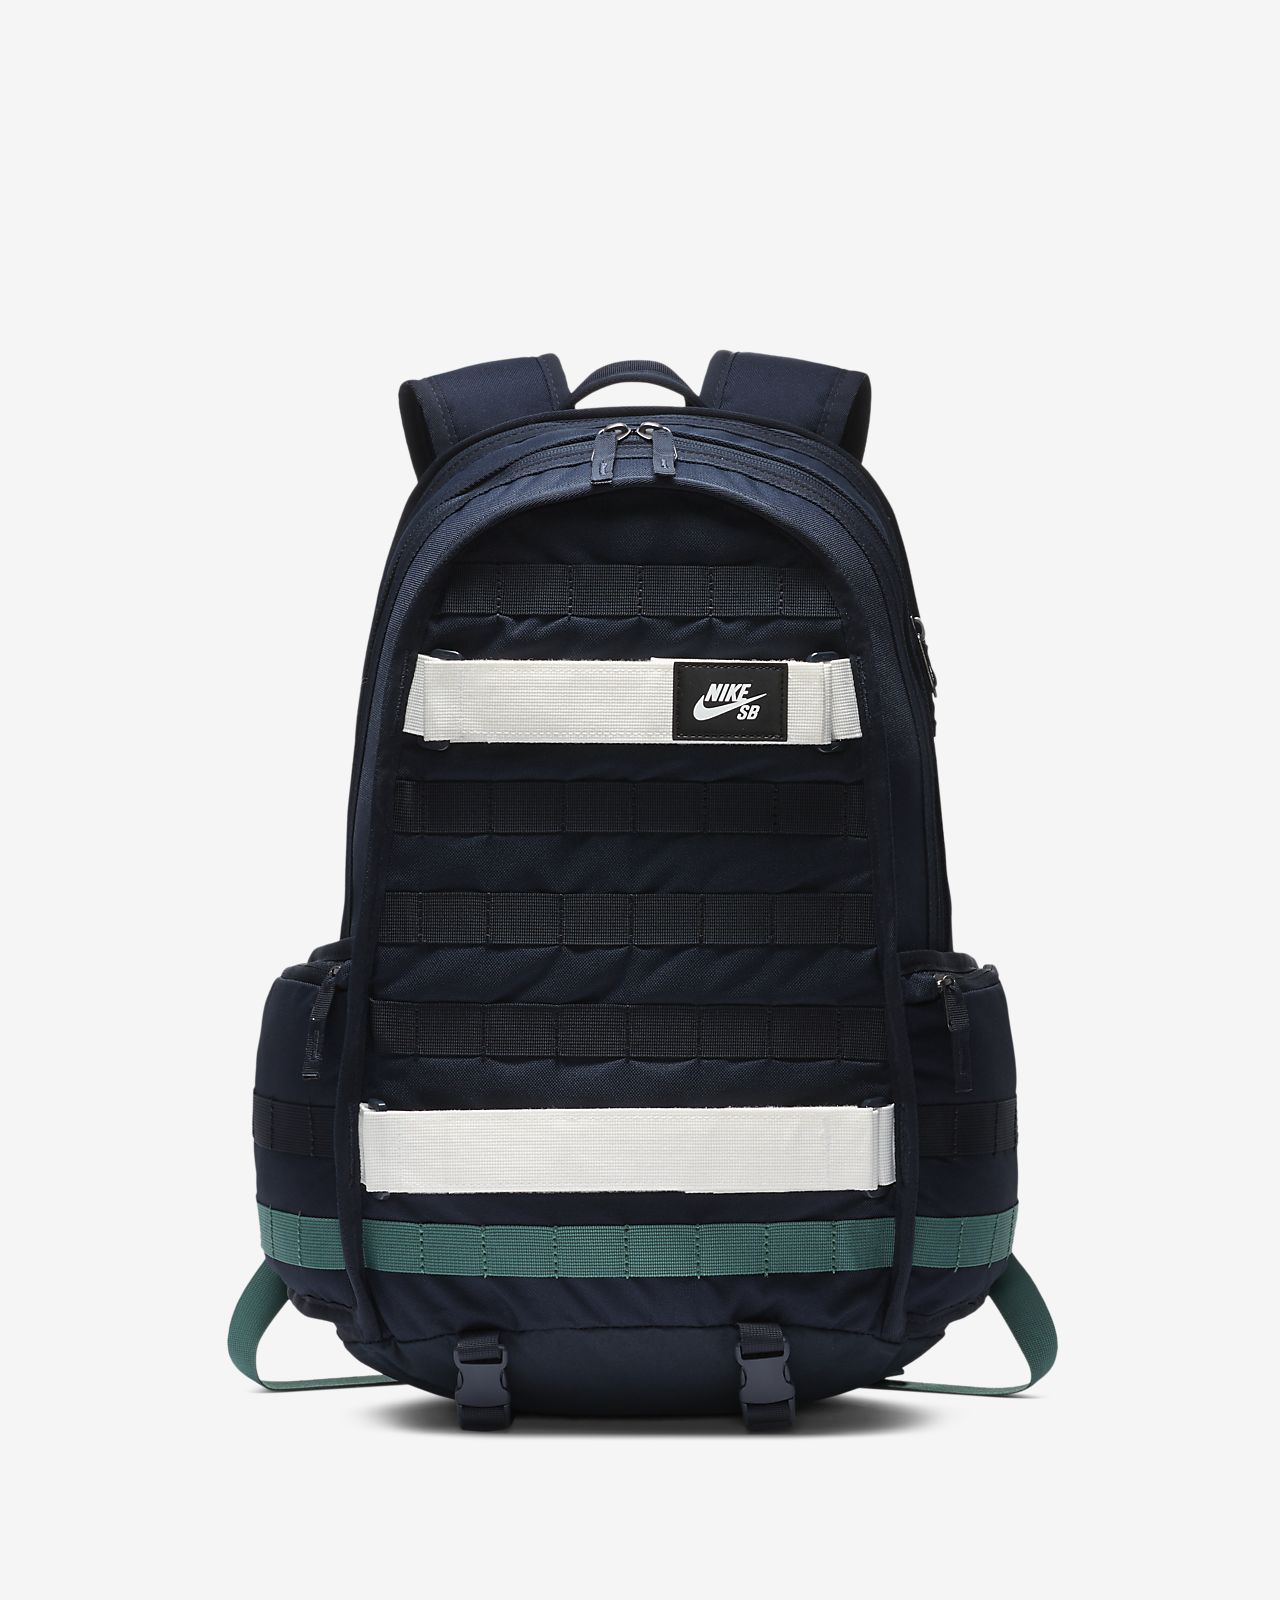 nike rpm backpack sale